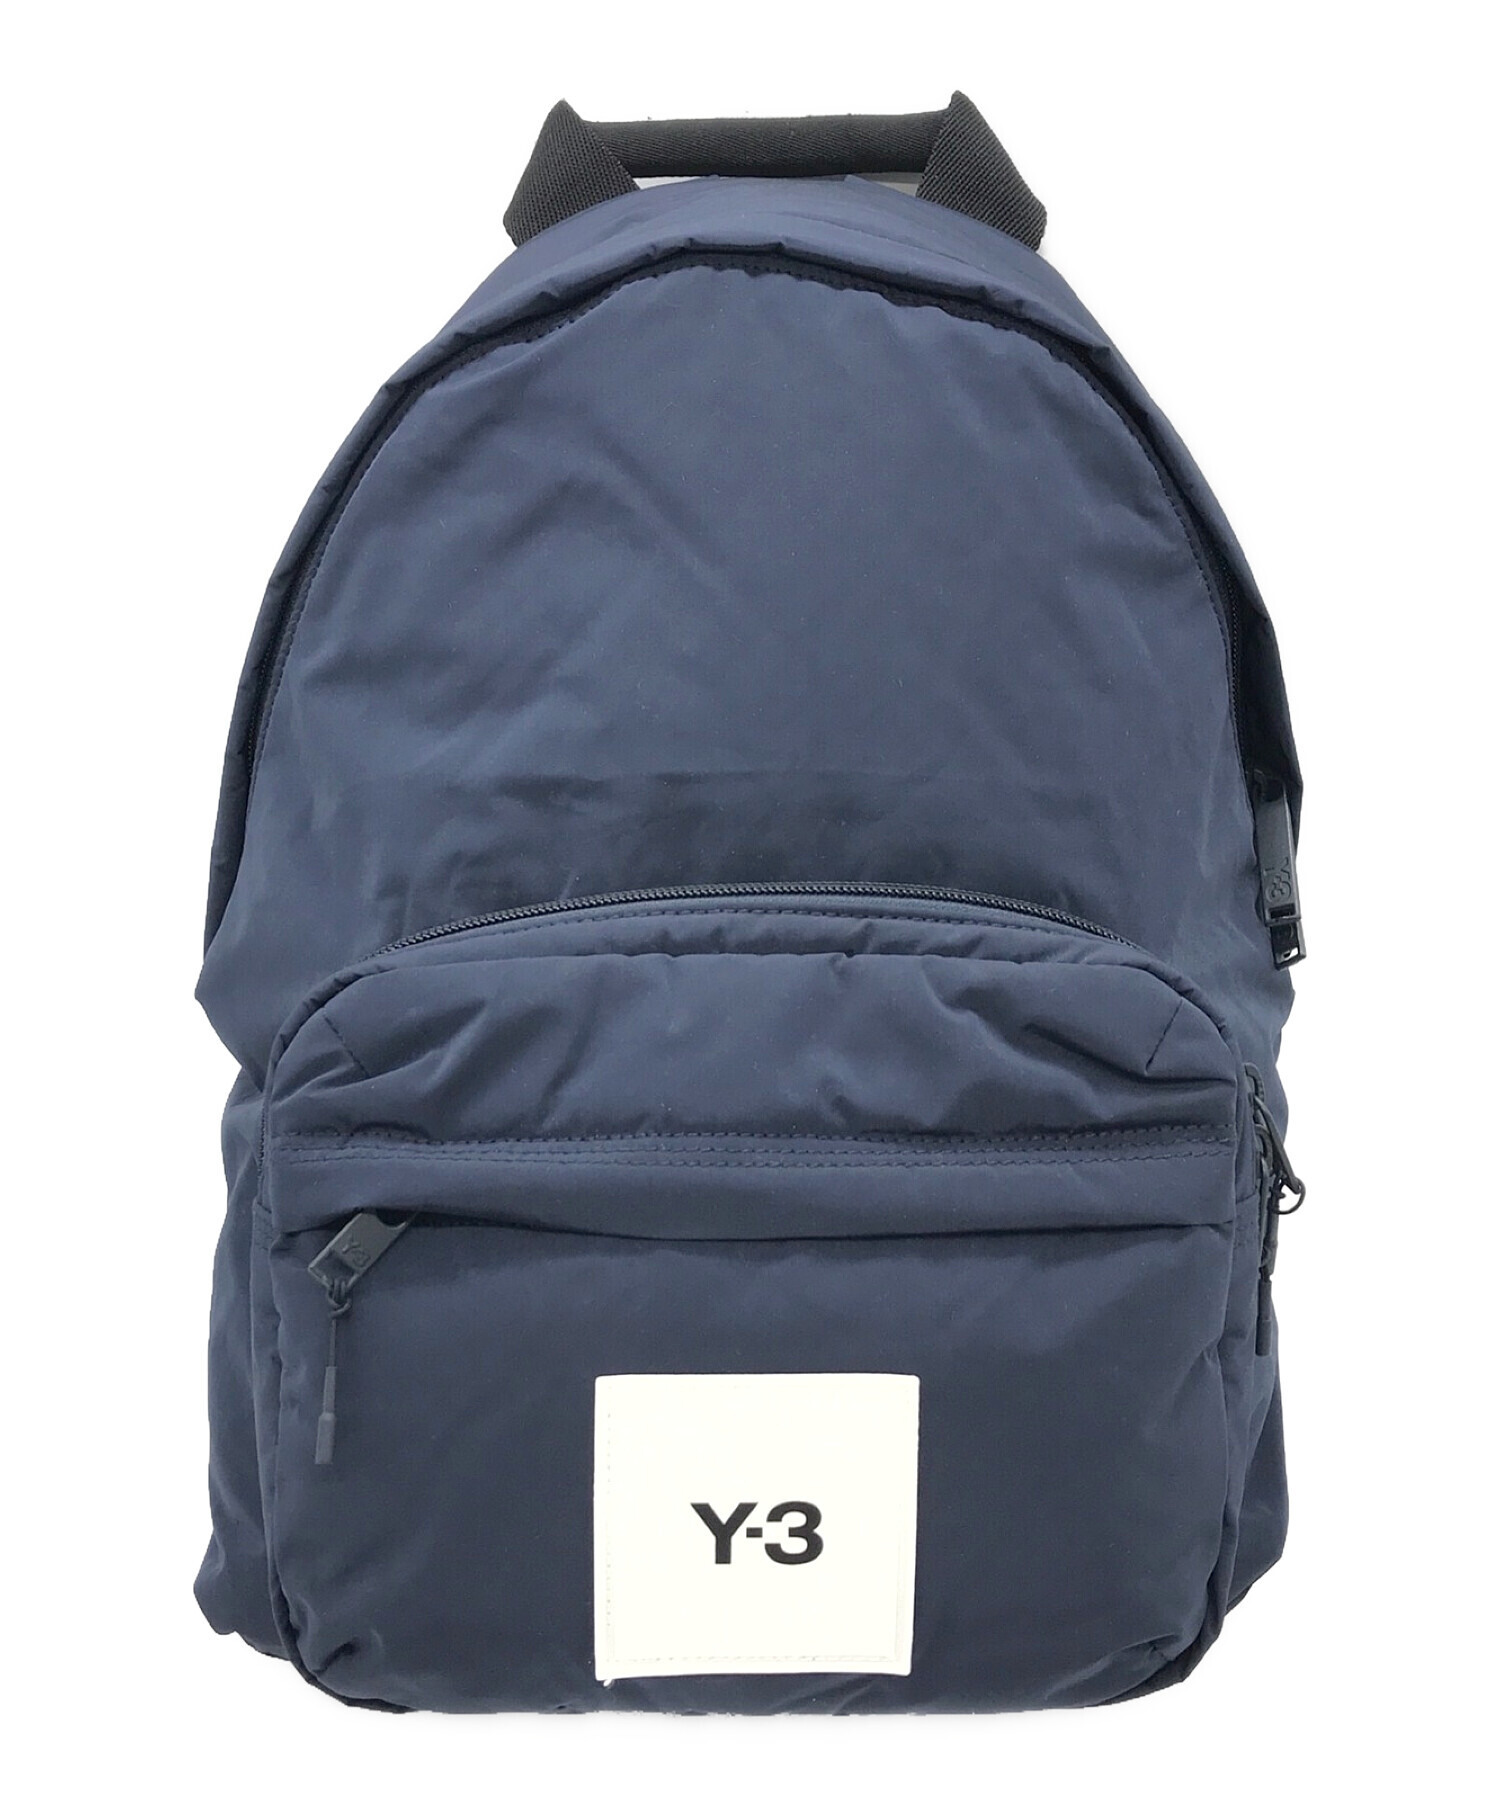 Y-3 (ワイスリー) TECHLITE TWEAK Backpack サイズ:下記参照